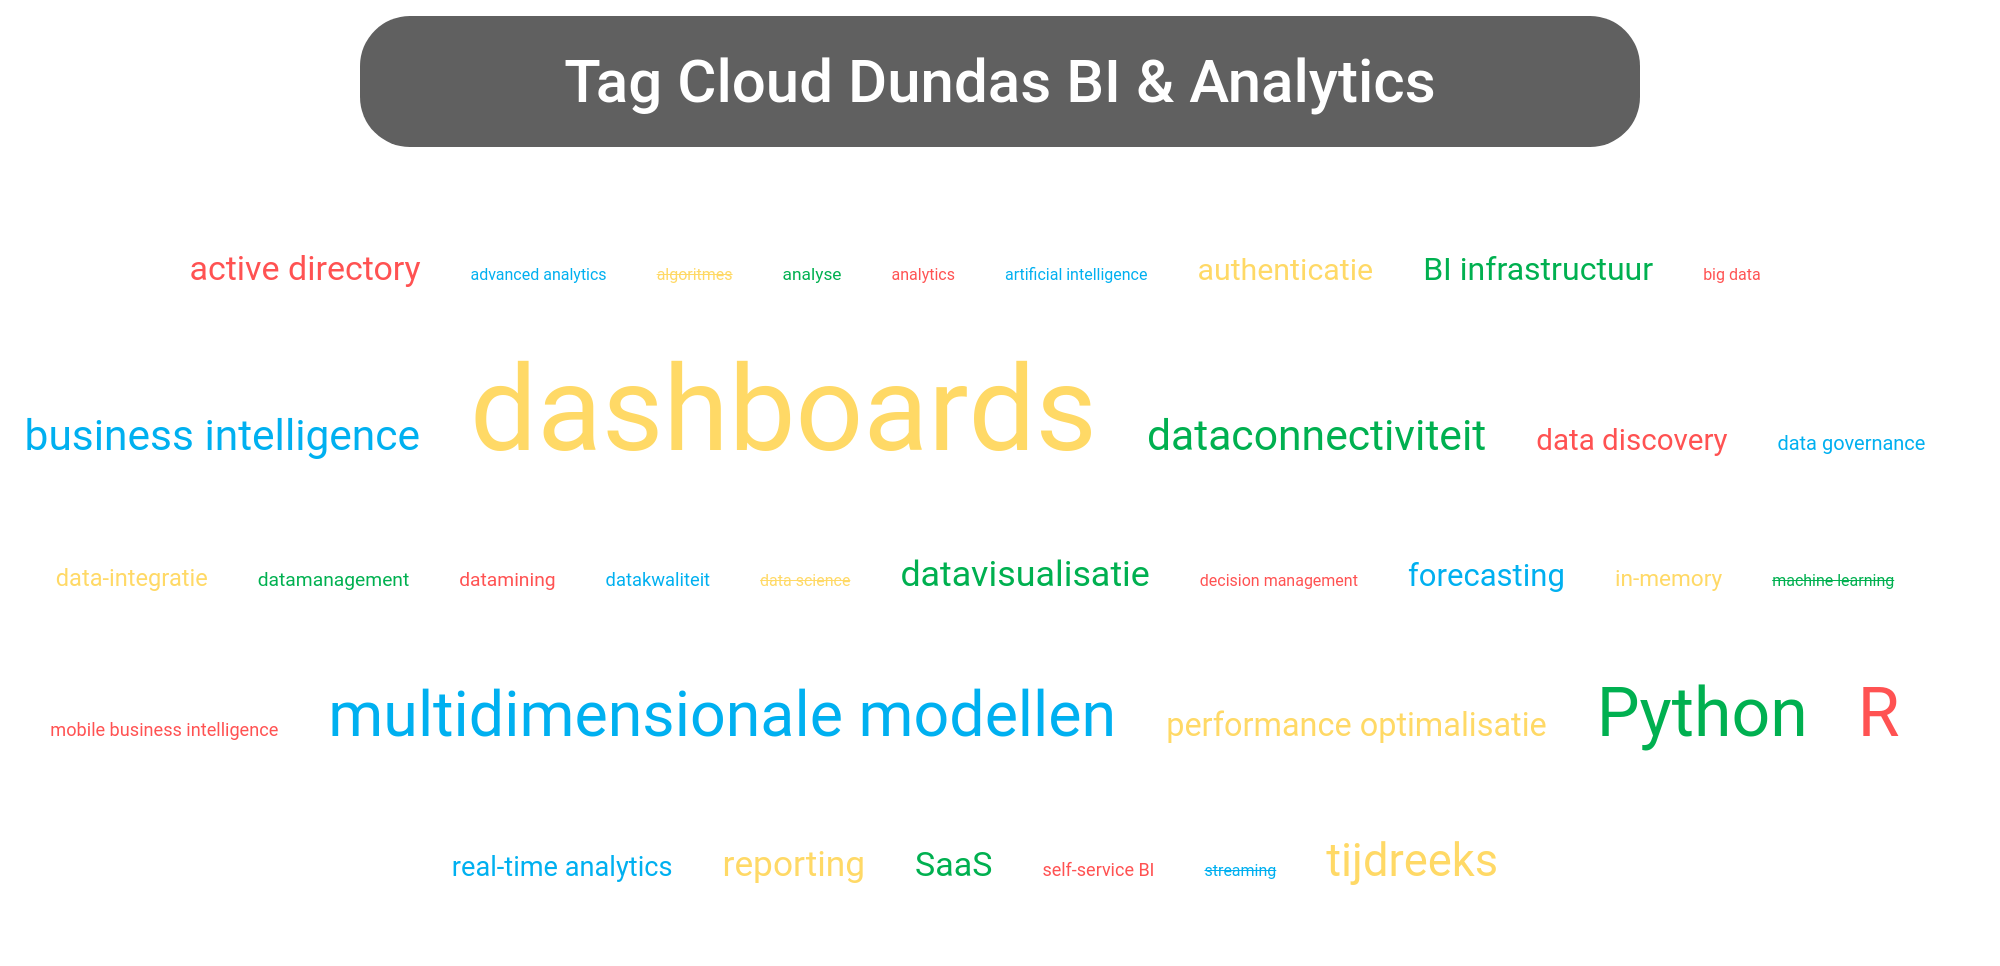 Tag cloud van Dundas BI tools.